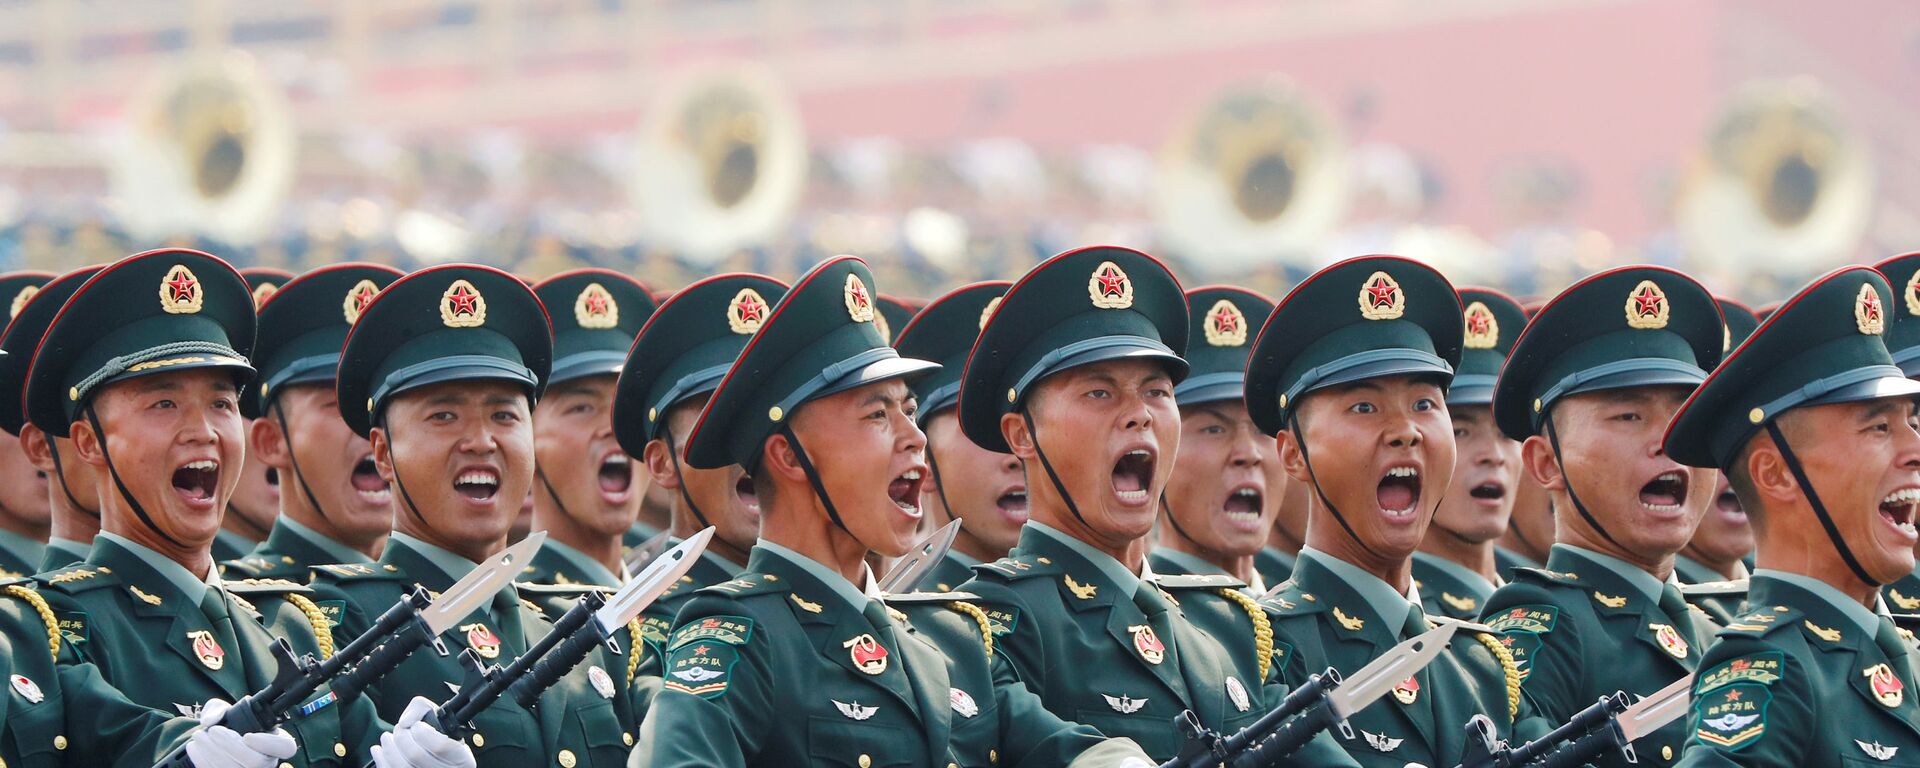 Солдаты армии Китая на военном параде в честь 70-летия образования КНР в Пекине  - Sputnik Таджикистан, 1920, 08.05.2020